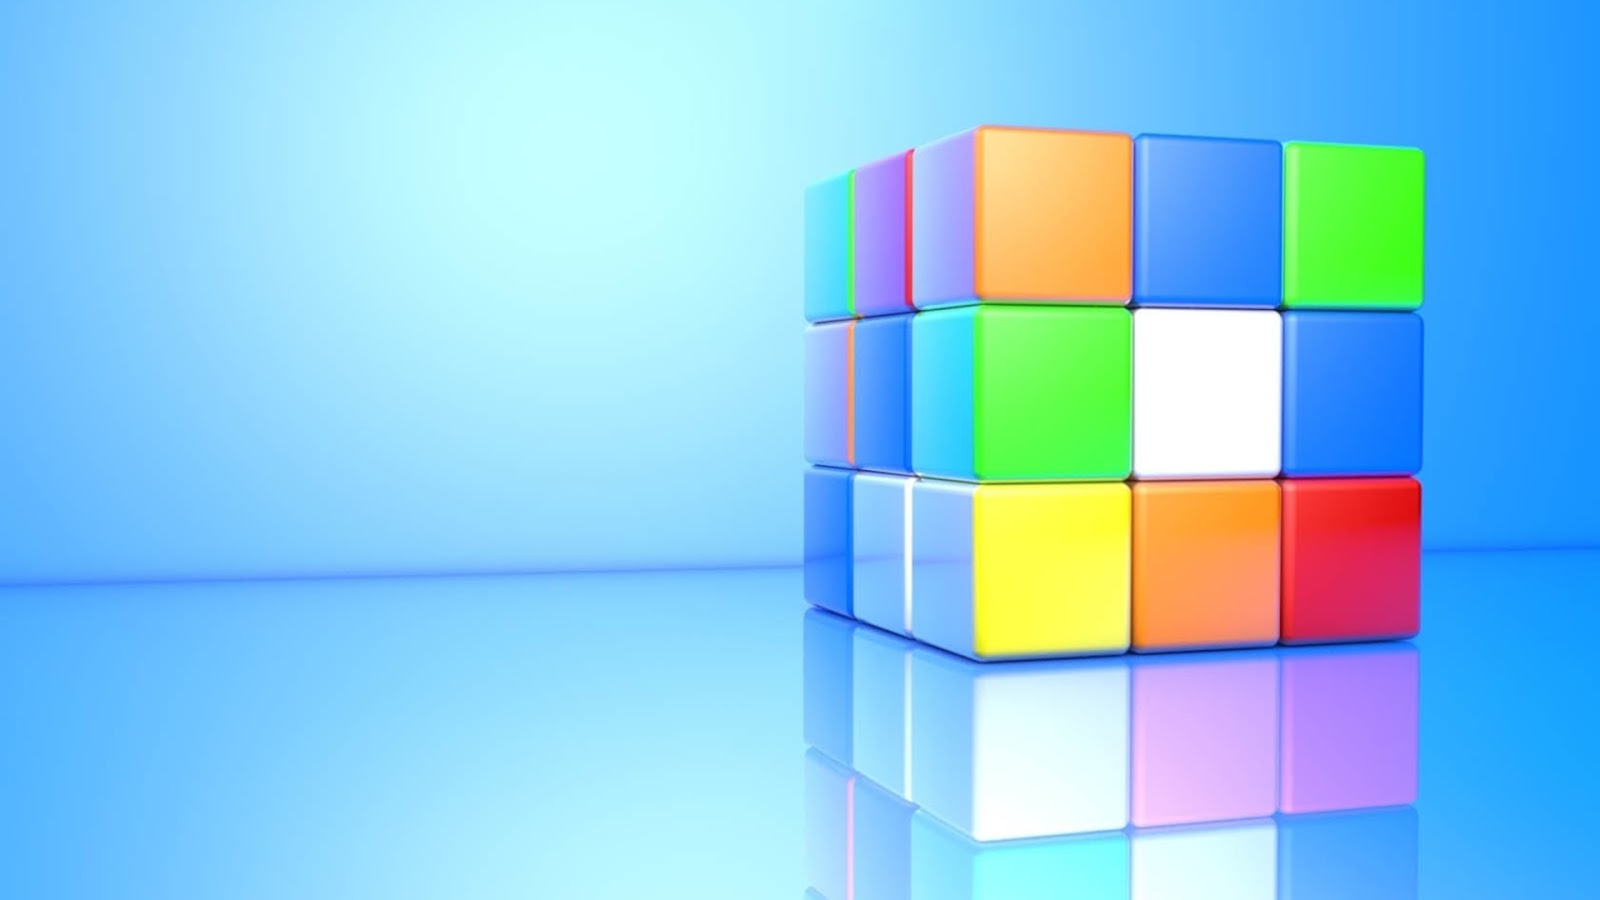 El cubo de Rubik